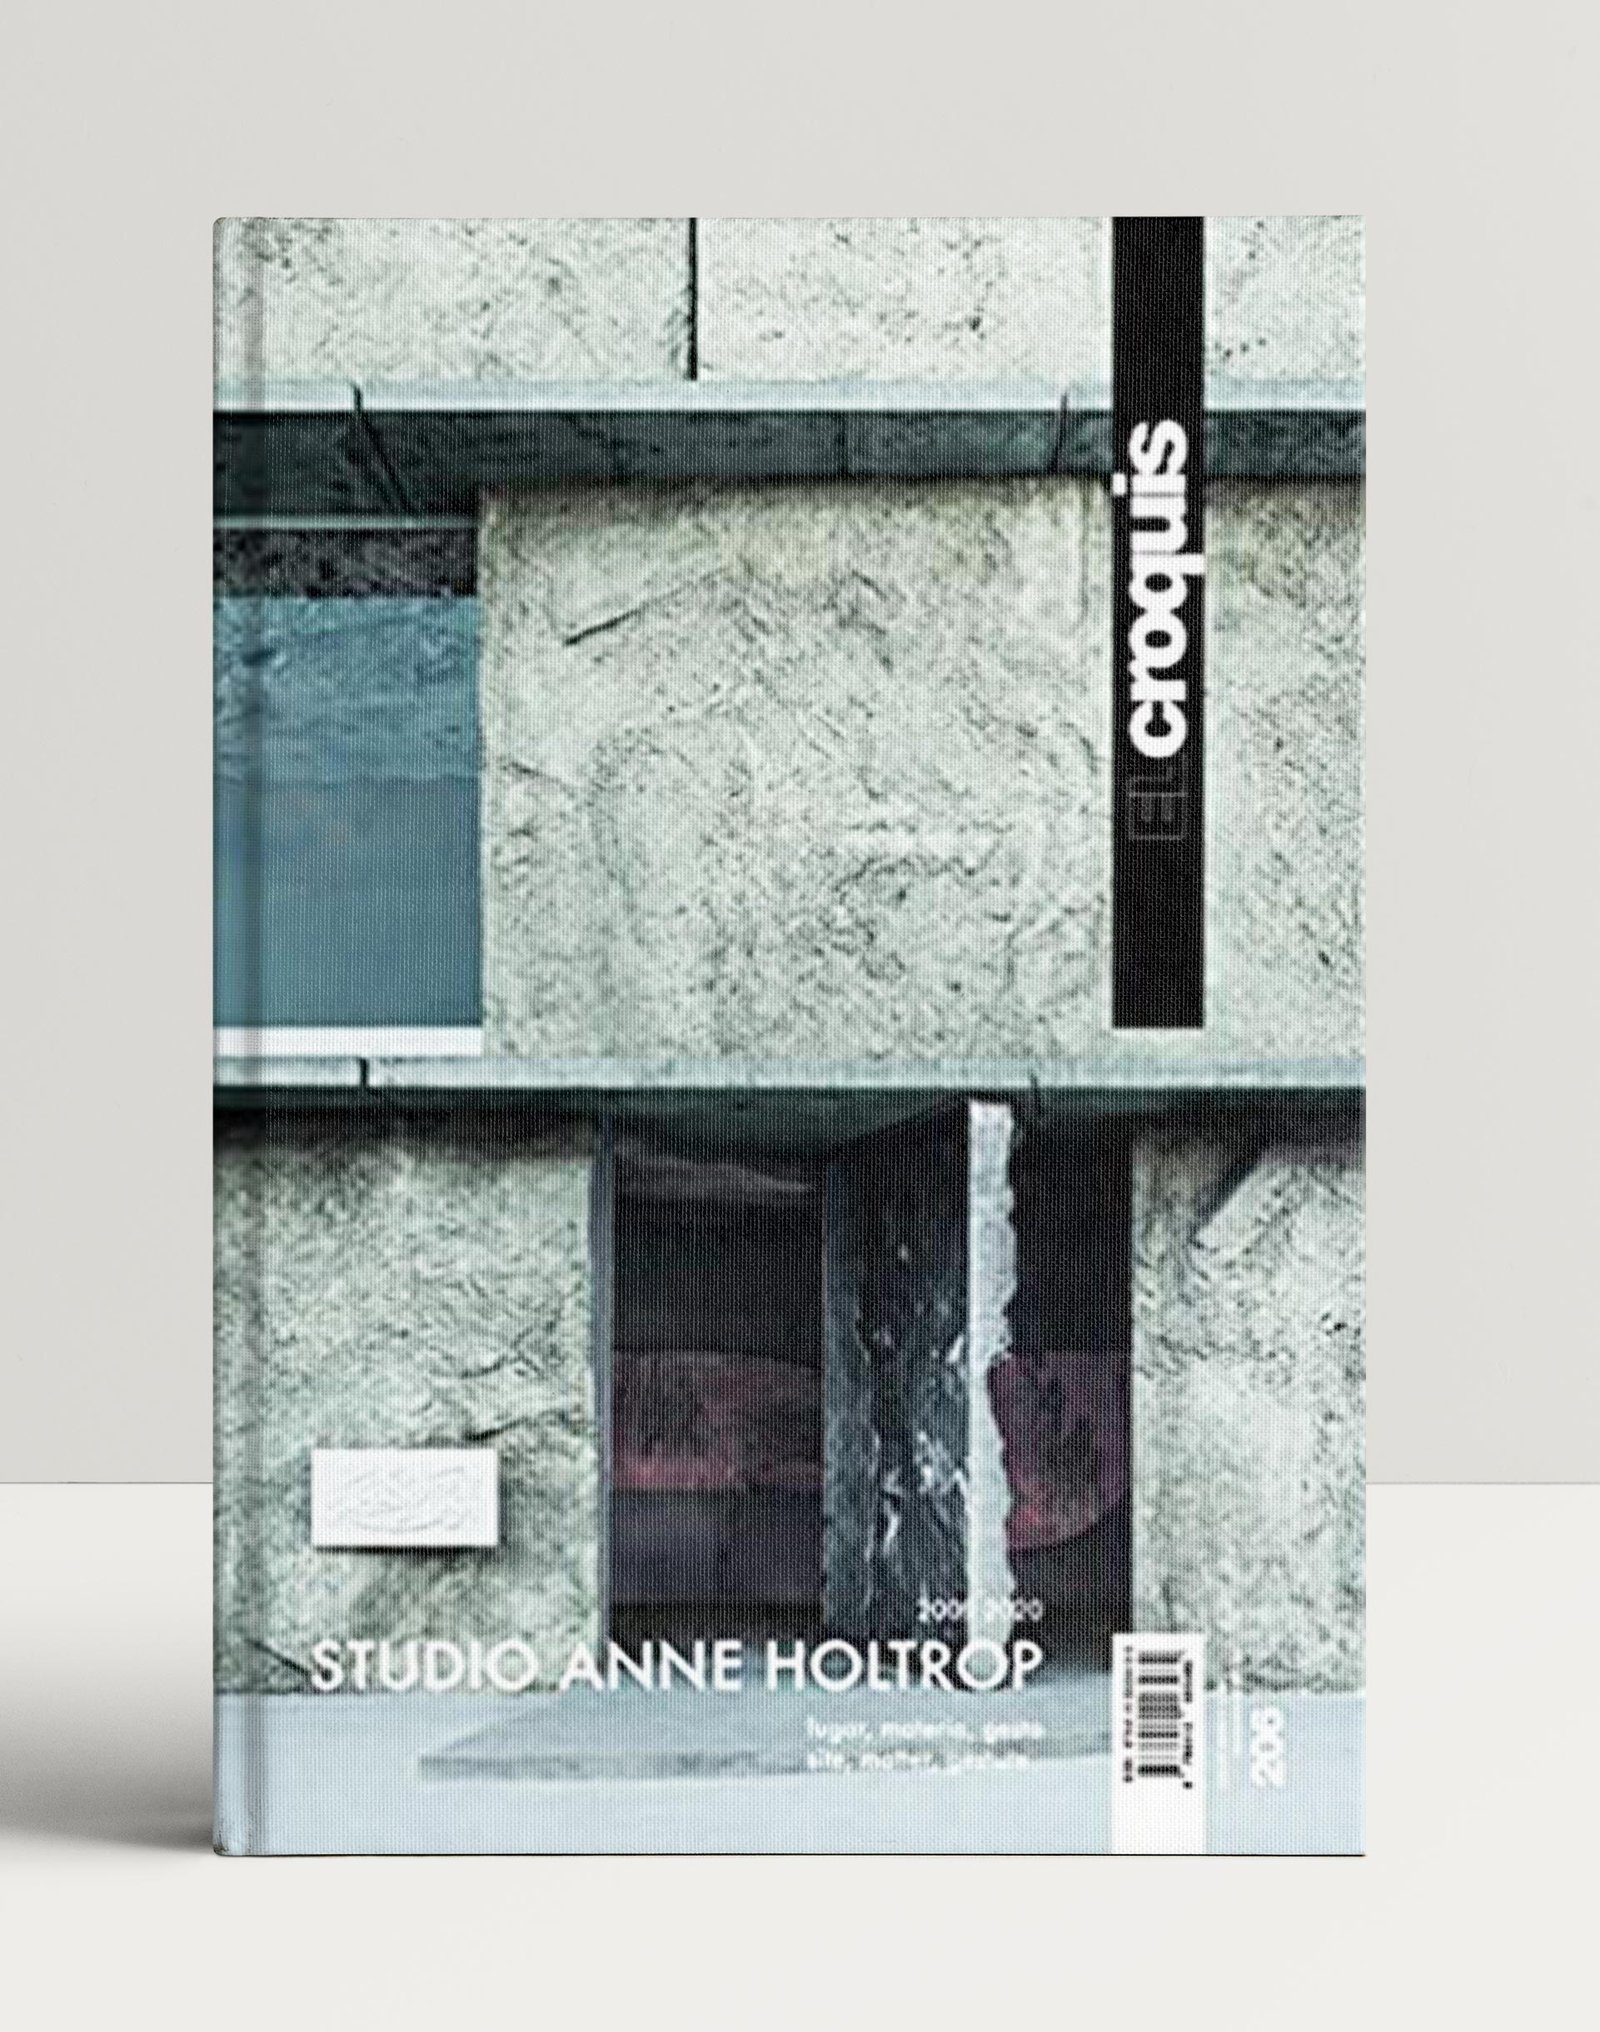 El Croquis 206: Studio Anne Holtrop (2009-2020)